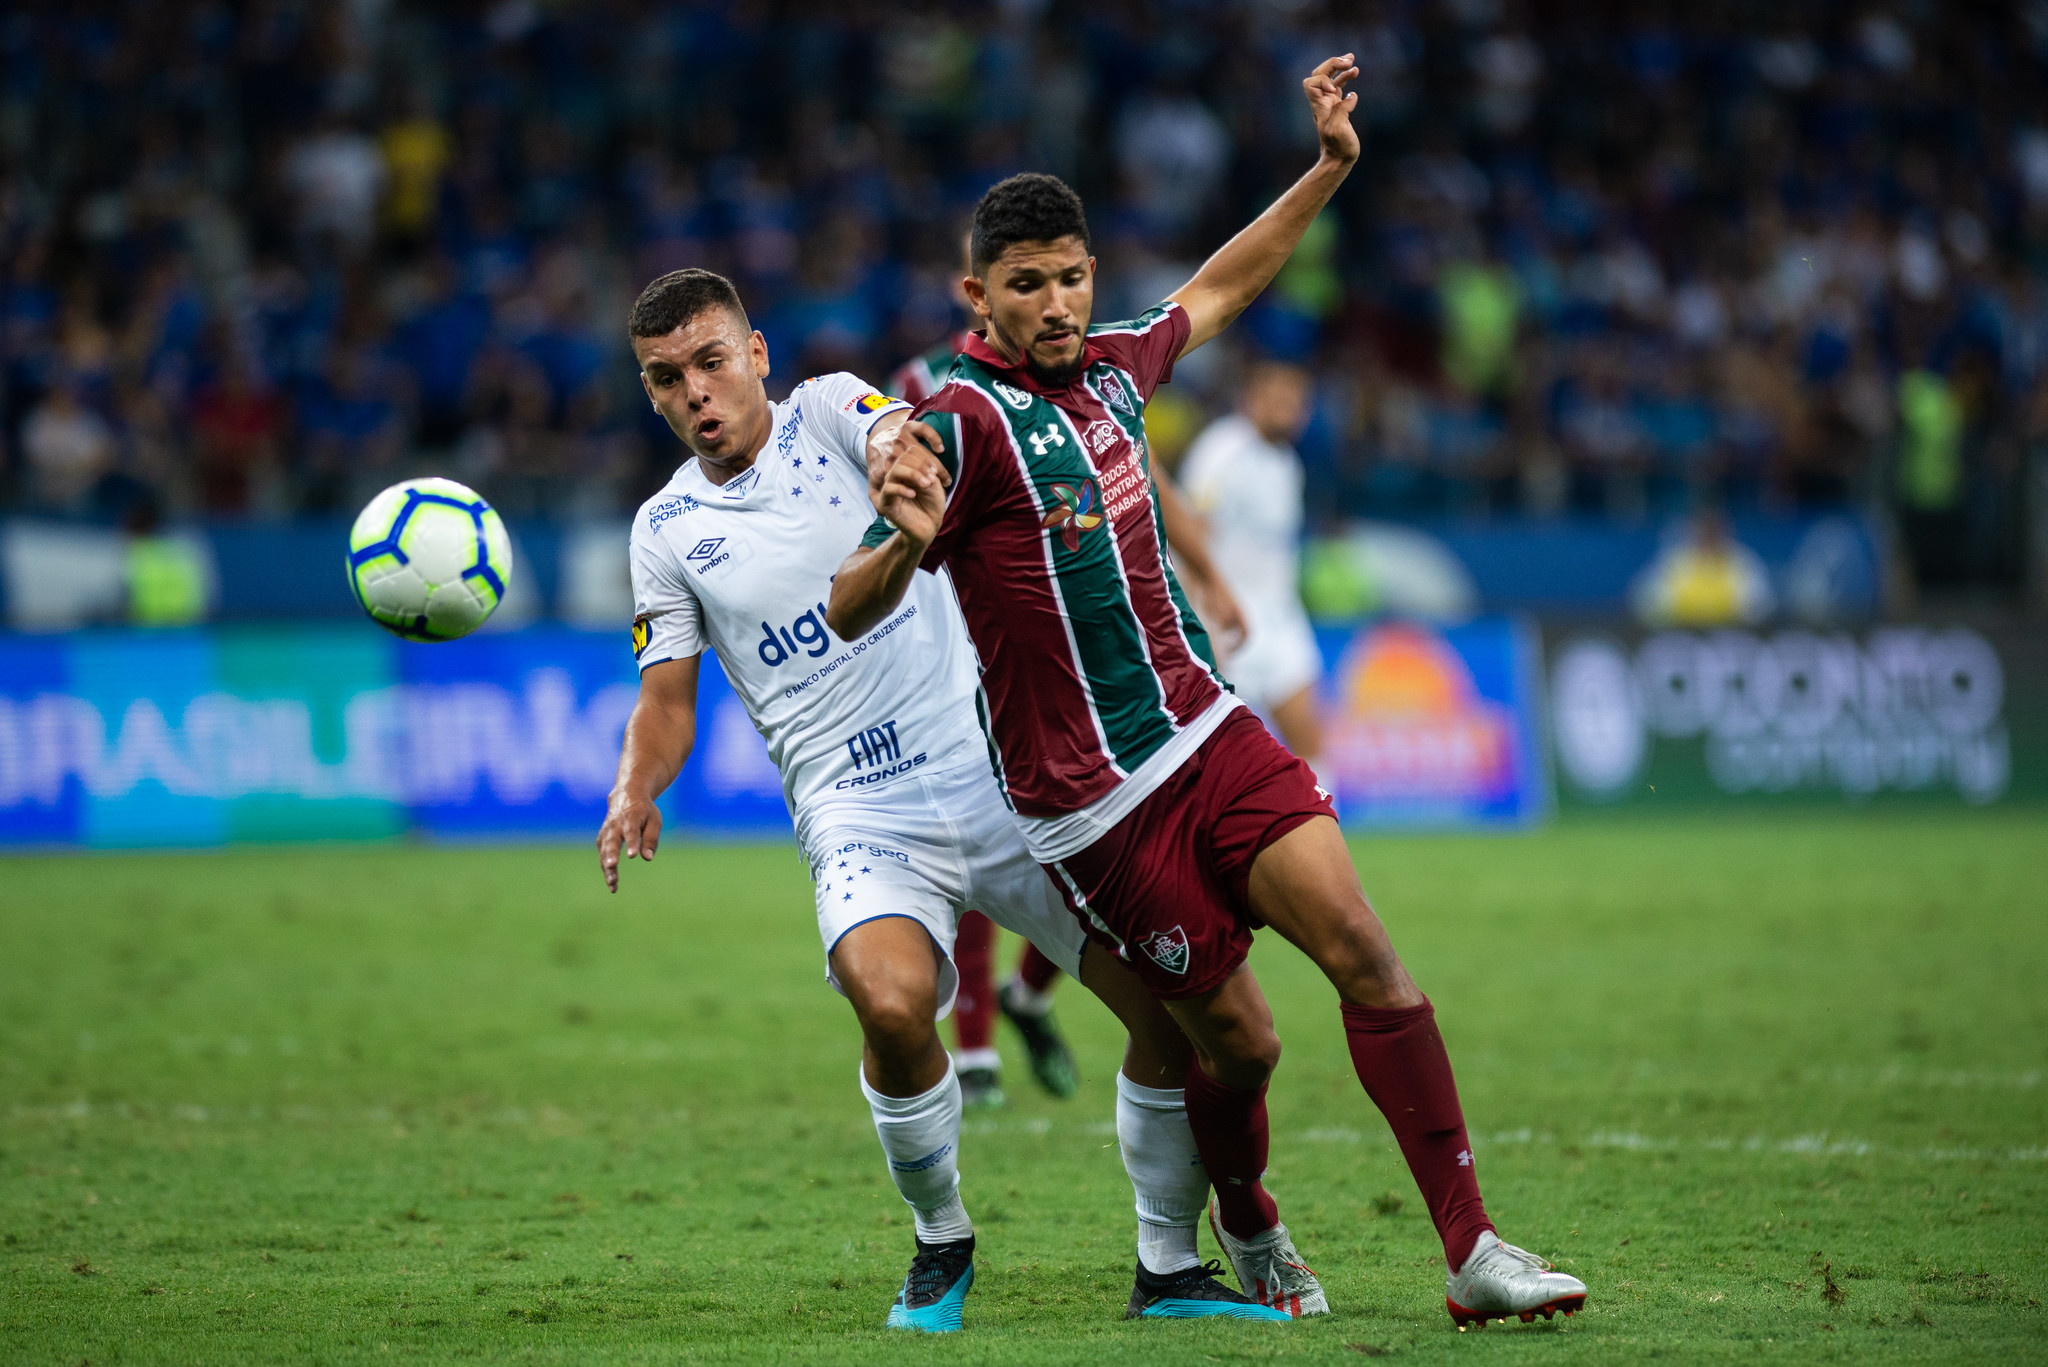 Tabu! Cruzeiro visita Fluminense querendo quebrar jejum impressionante em jogos no Rio de Janeiro